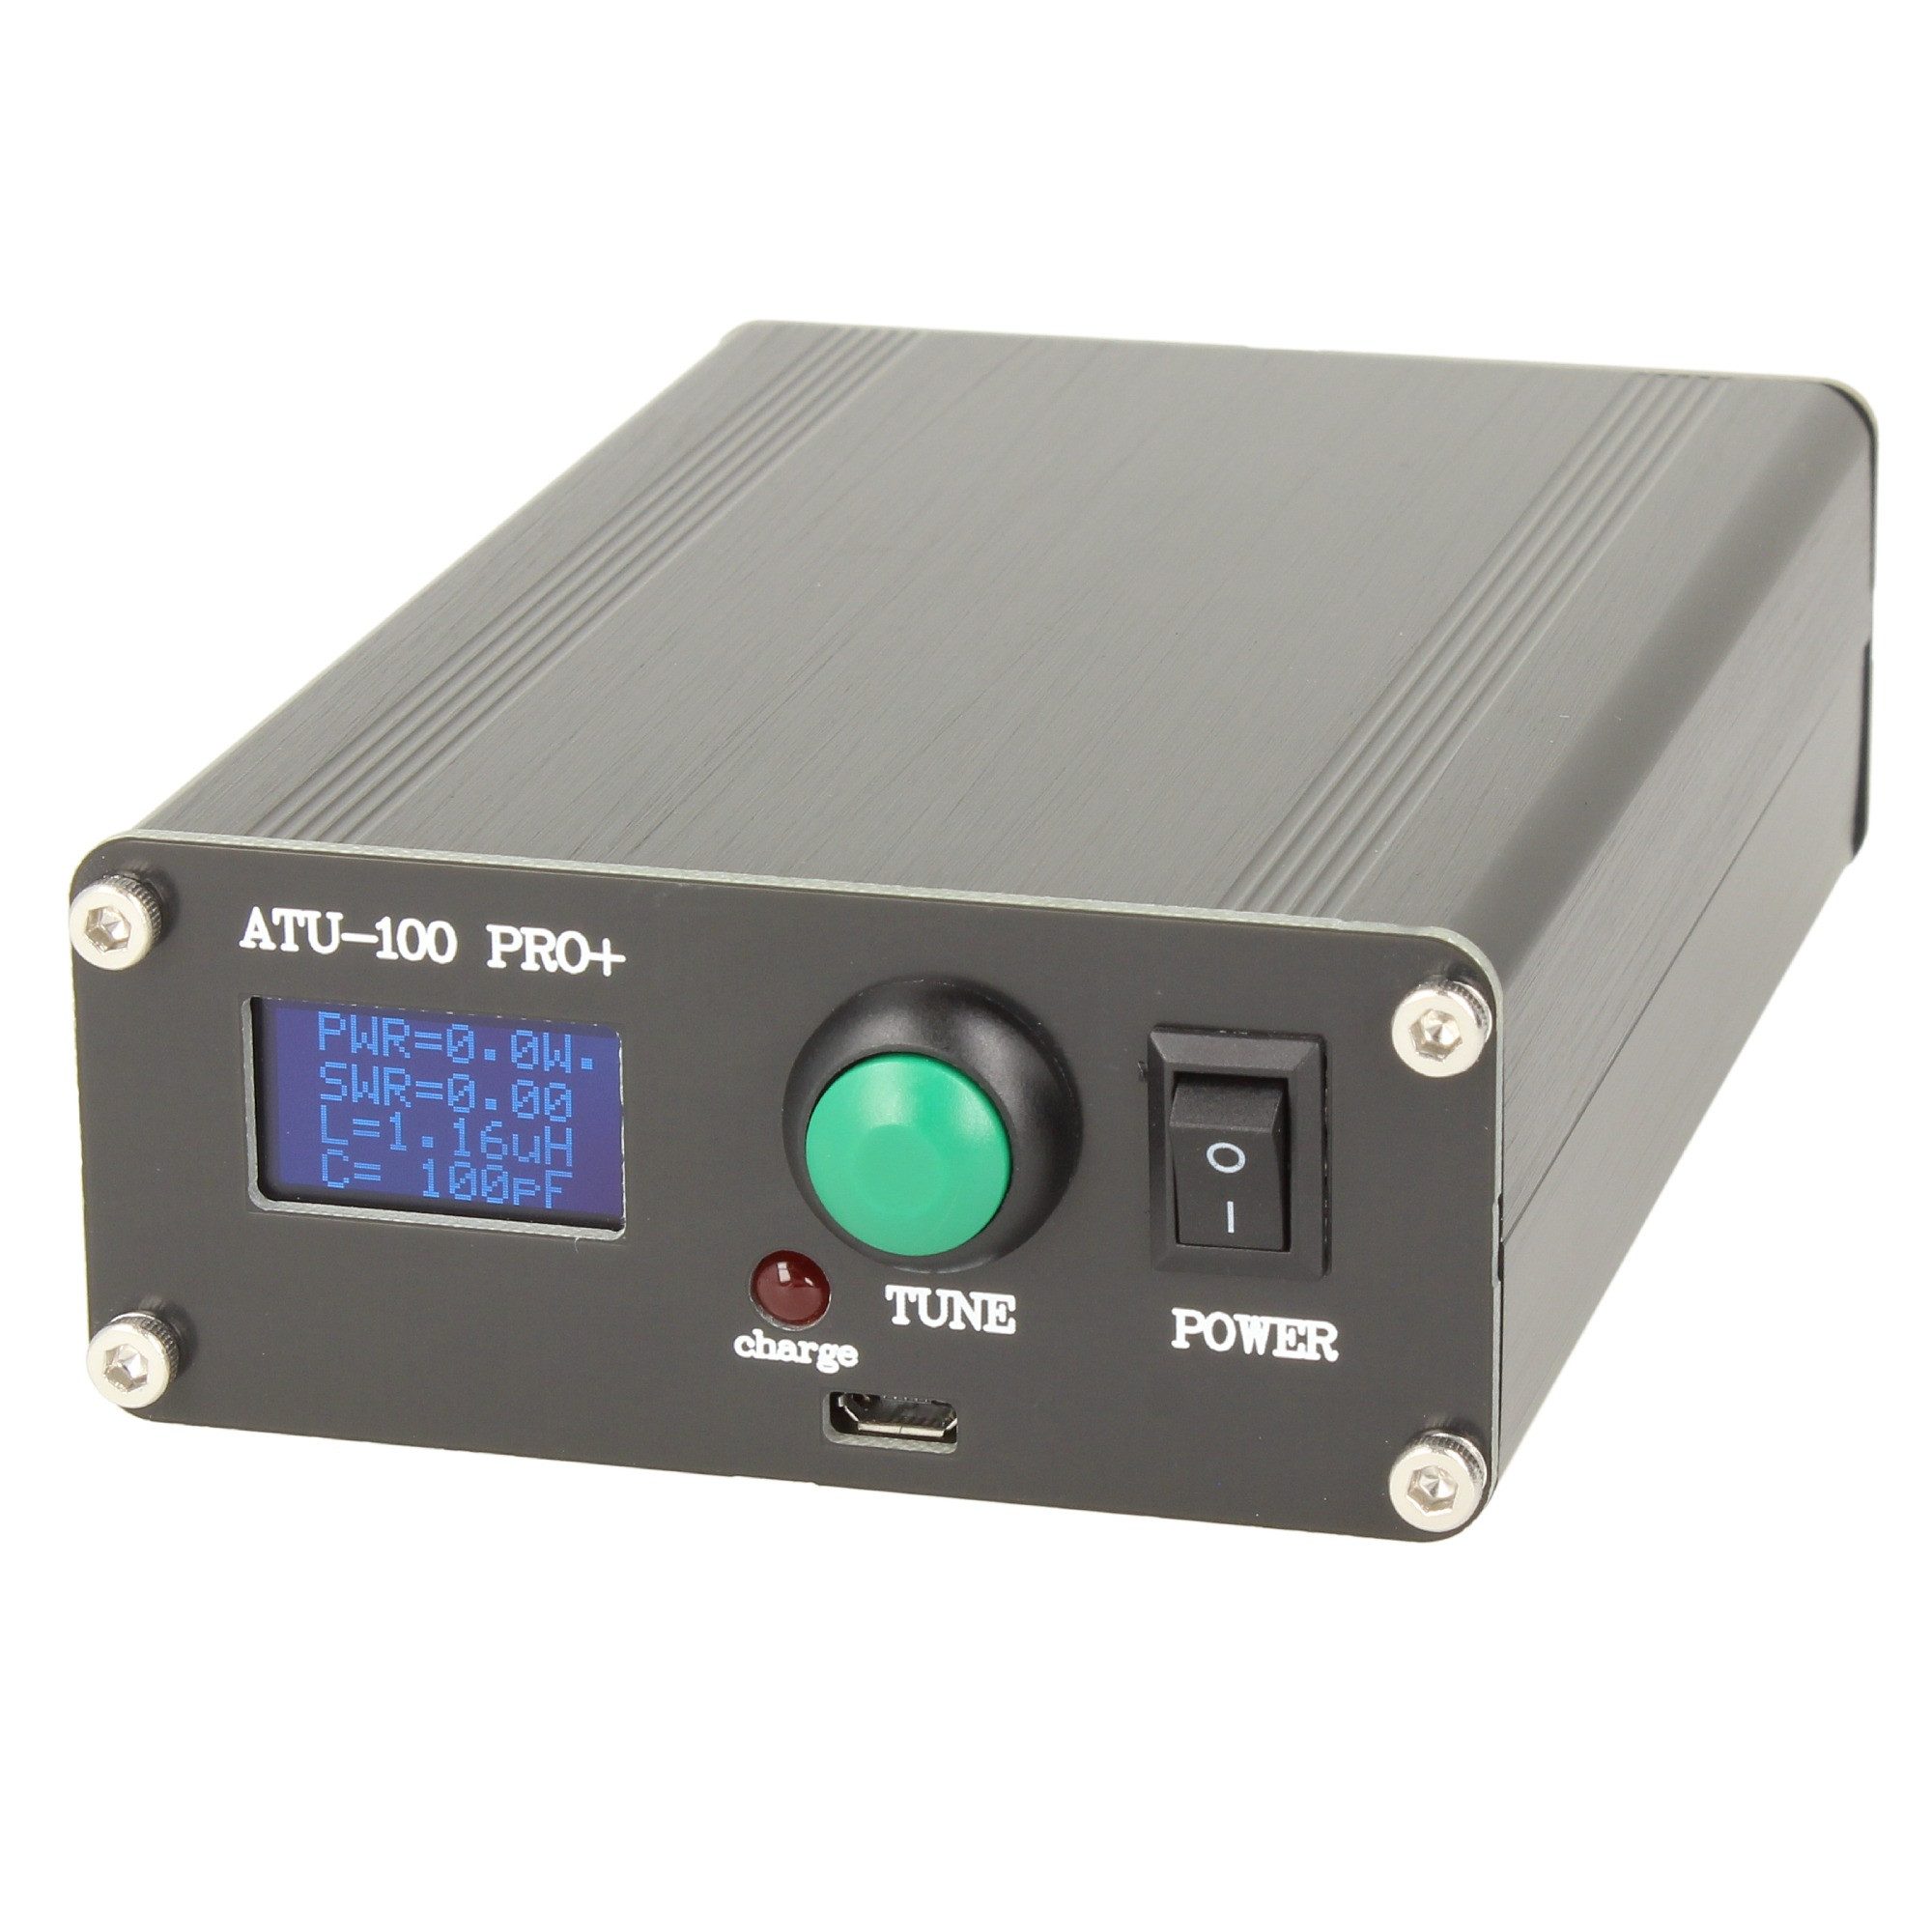 Minadax Funkgerät ATU-100 Pro+, 100W Automatischer Antennentuner, 1.8 - 50MHz